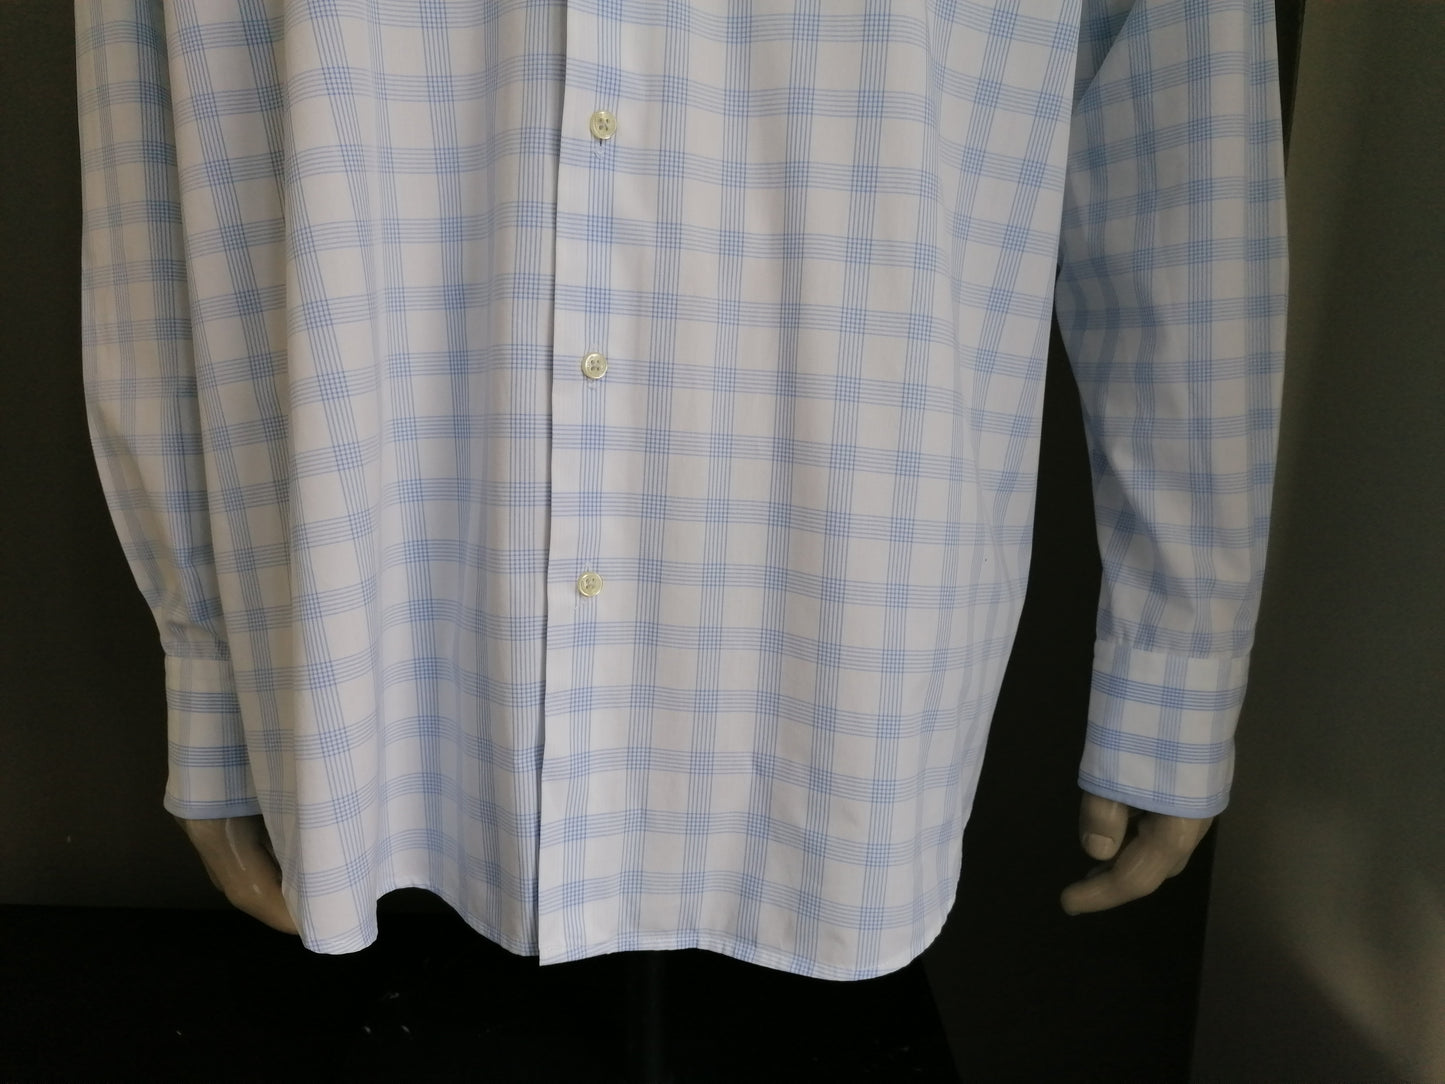 Camisa de ledub. Blanco azul comprobado. Tamaño 46 / XXL / 2XL. Apto moderno